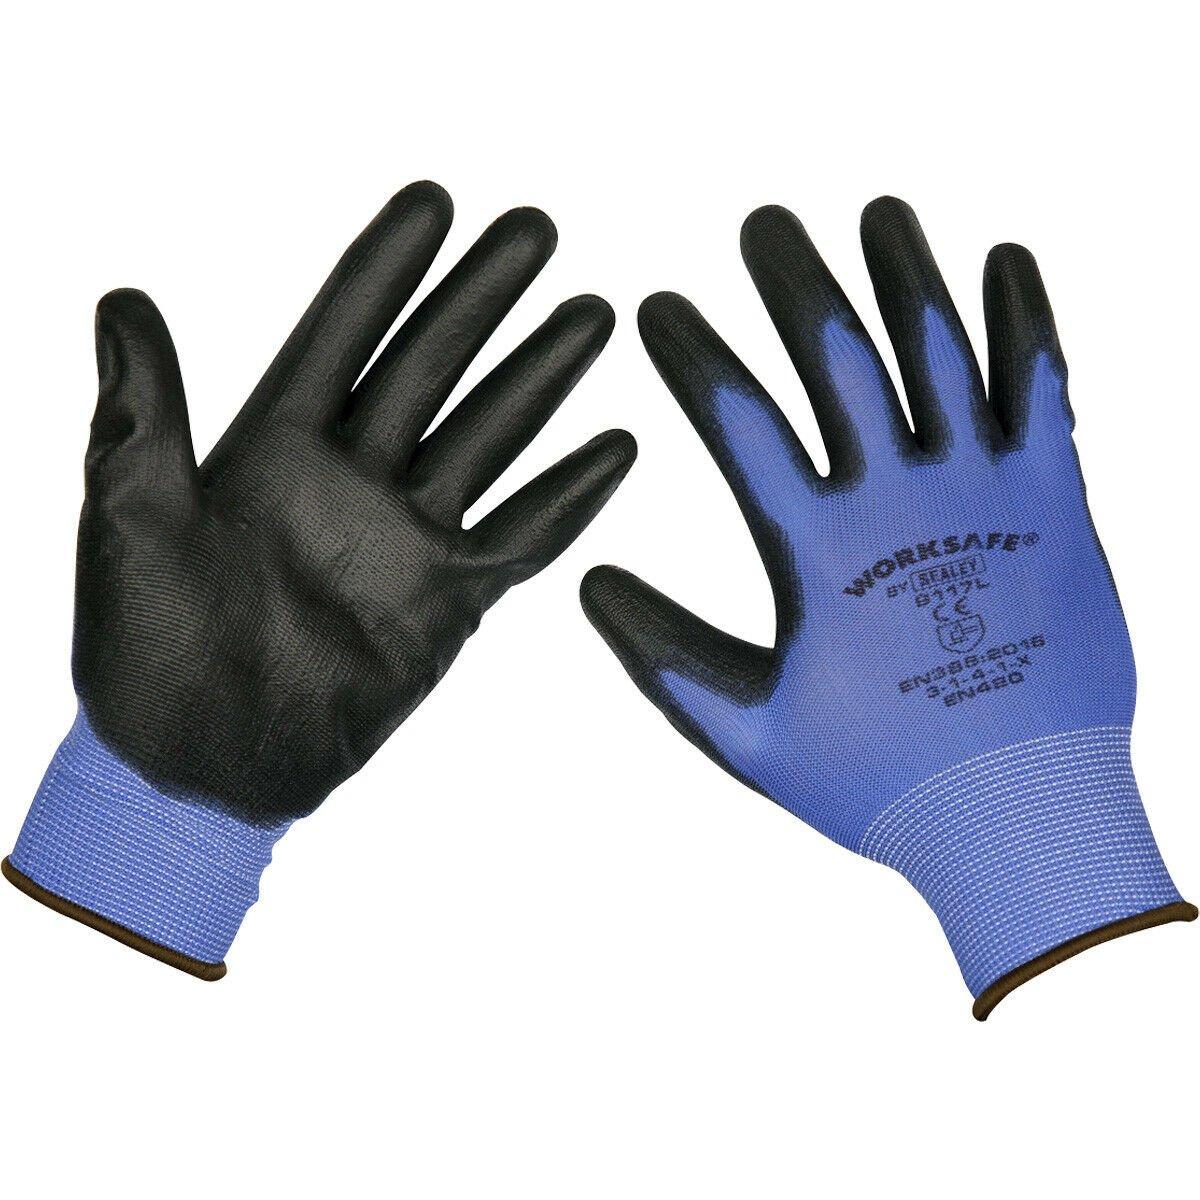 цена 6 пар легких рабочих перчаток с точным захватом, больших размеров, на эластичном запястье Loops, мультиколор